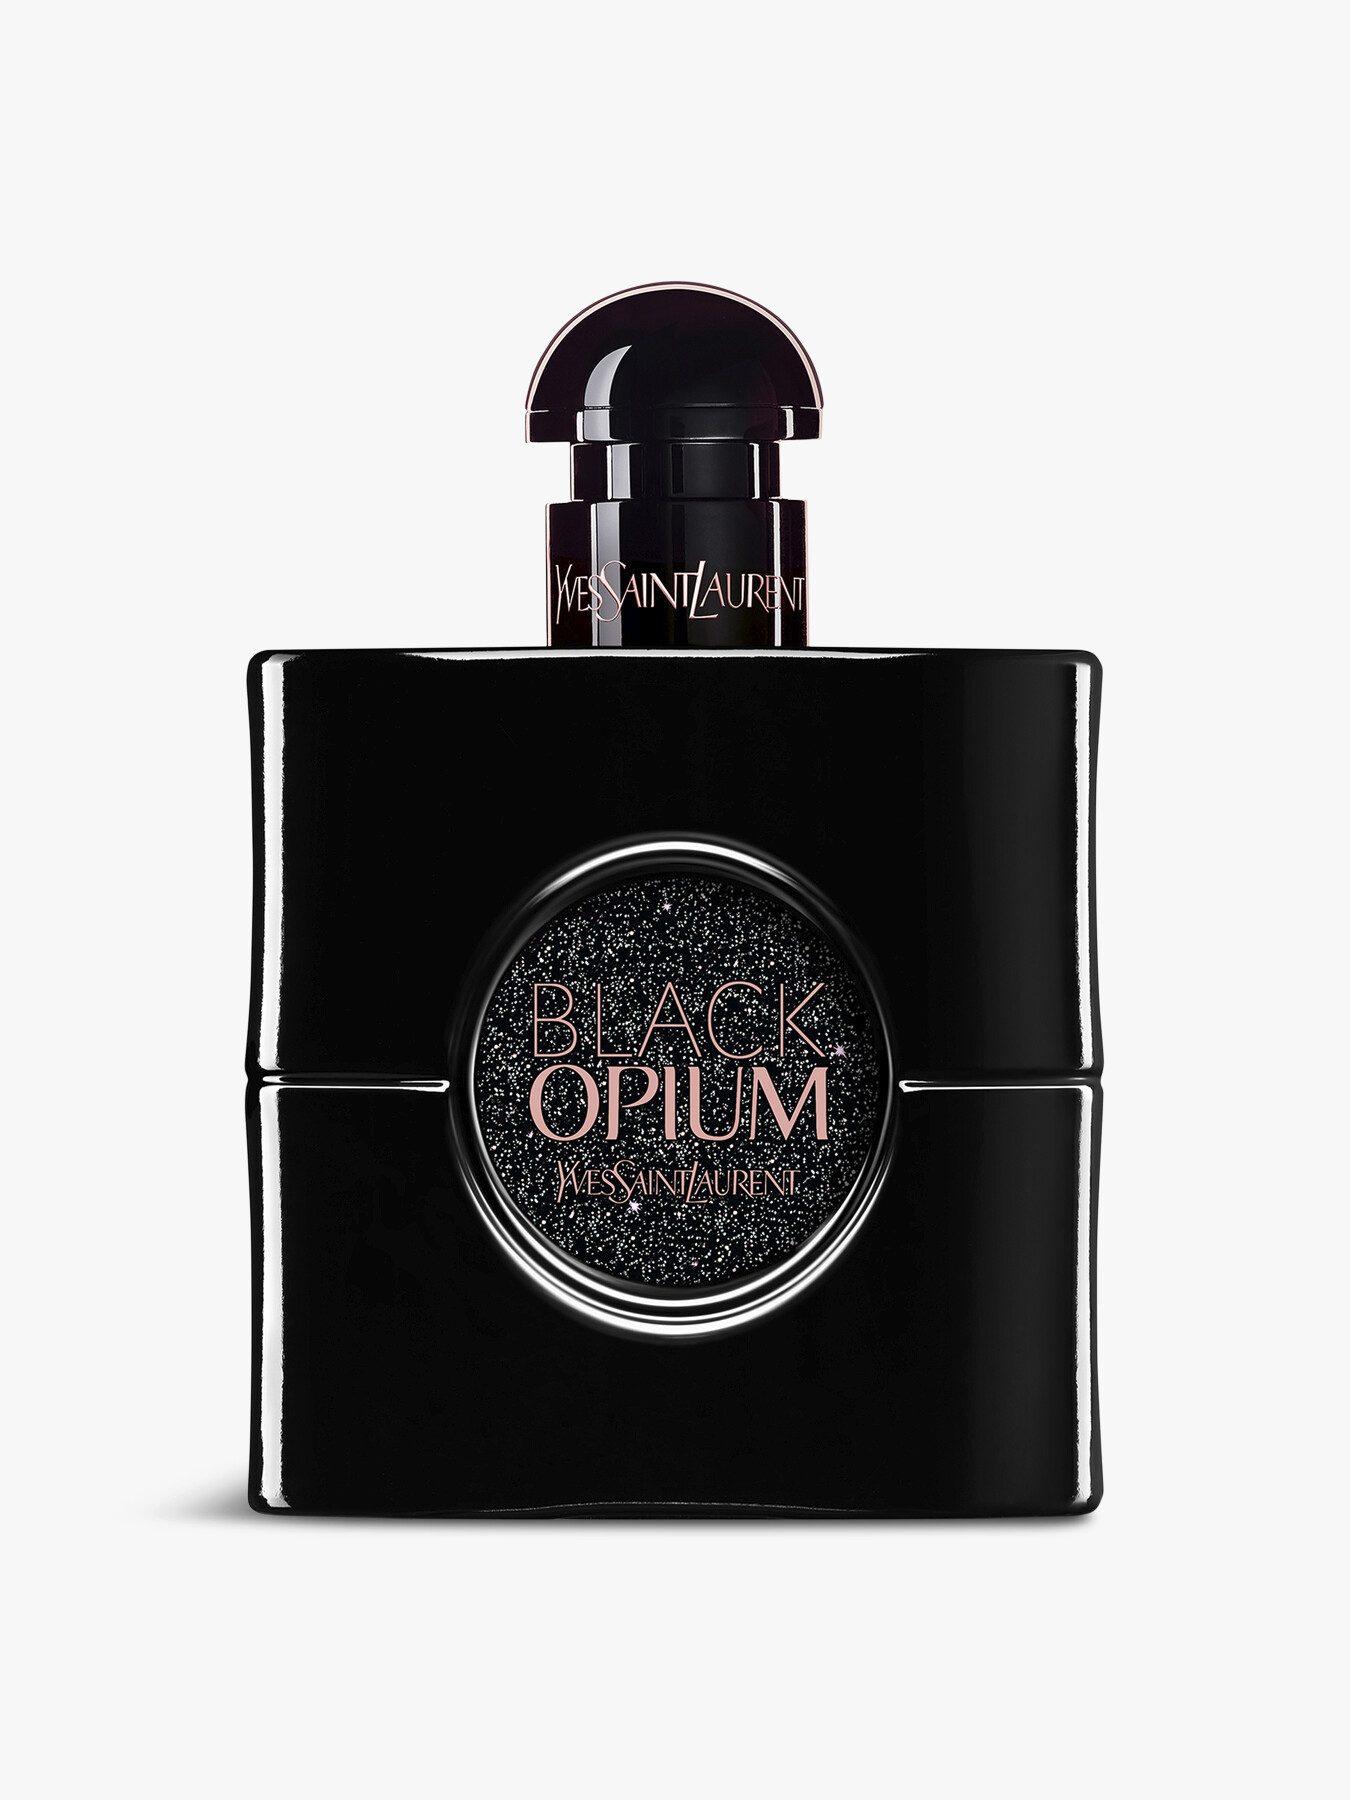 Ysl Black Opium Le Parfum 50ml